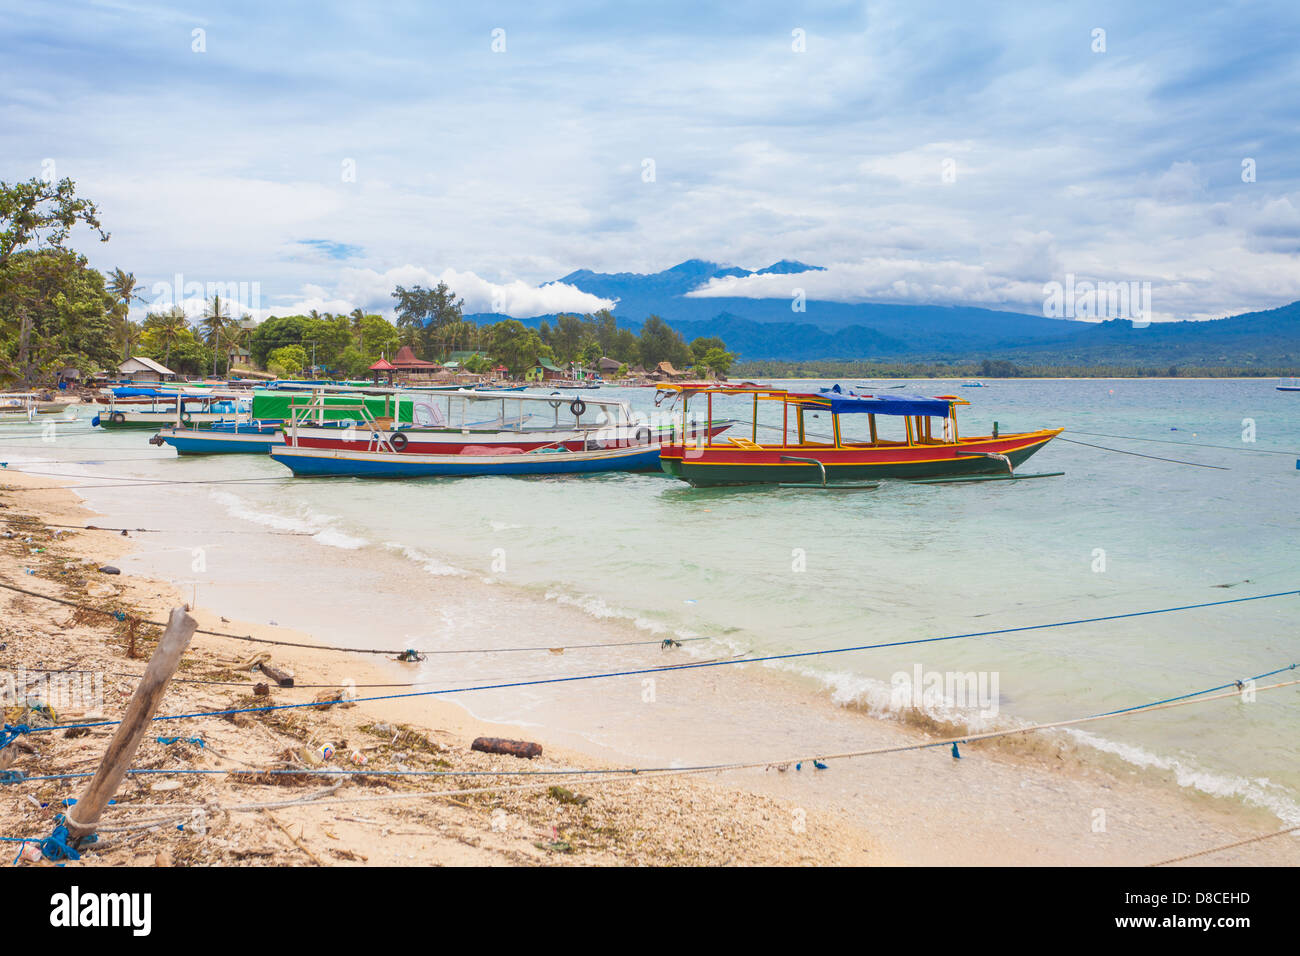 Angelboote/Fischerboote in der Bucht auf Gili Air Insel Bali, Indonesien Stockfoto